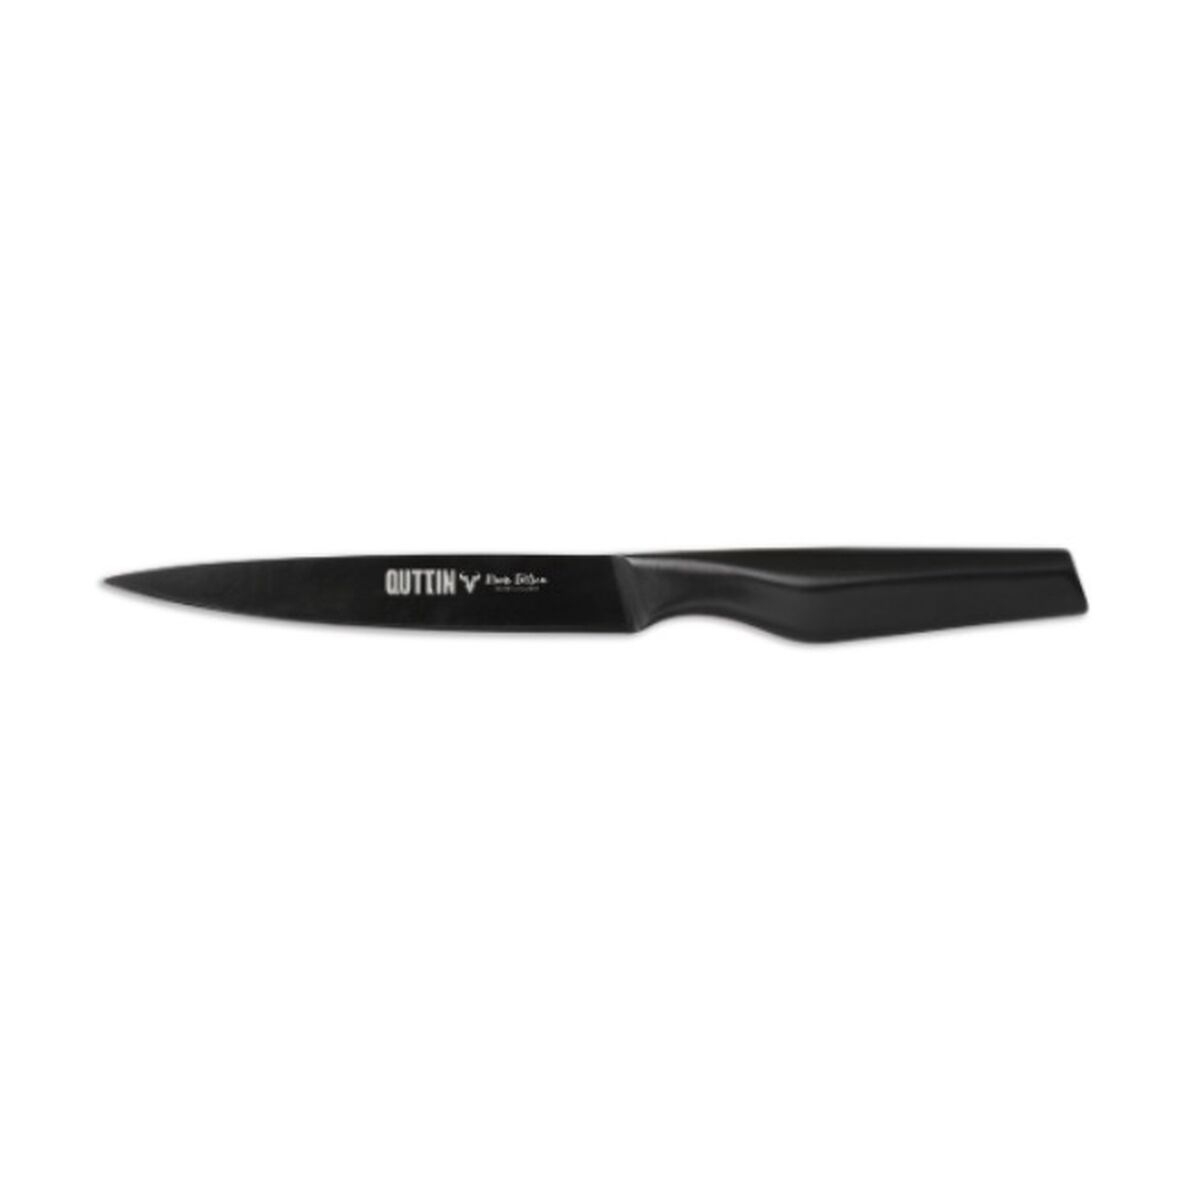 Vegetable Peeler Knife Quttin Black Edition 13 cm